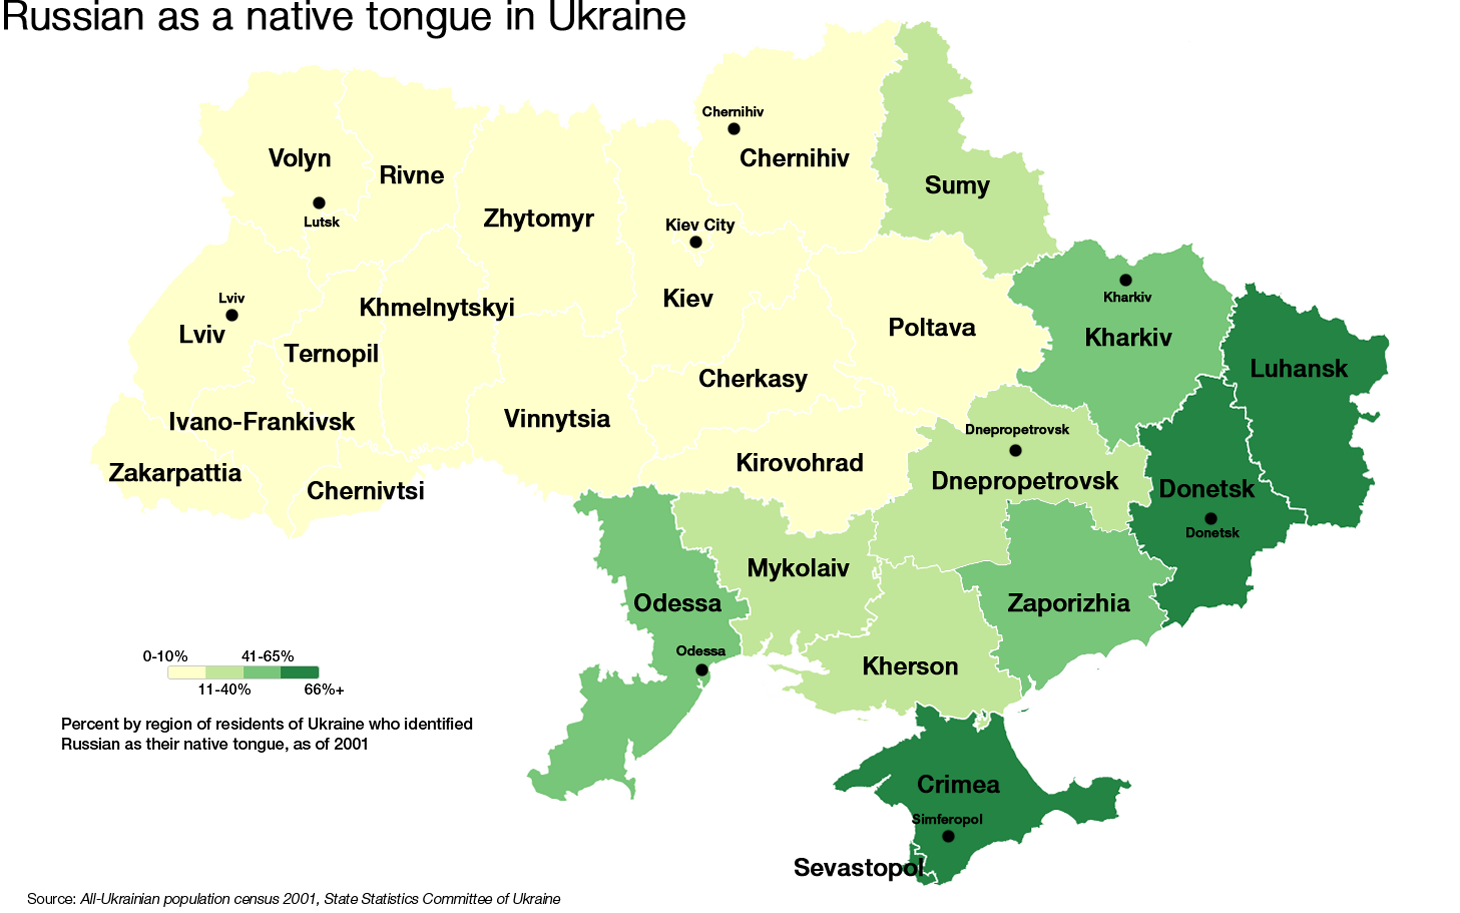 La cartina mostra la percentuale di ucraini che dichiara di parlare russo come prima lingua. Più il colore verde è scuro, più la percentuale è alta. Le tre regioni con la percentuale più alta (Crimea, Donetsk, Luhansk) si sono già dichiarate indipendenti, le altre dell'est Ucraina potrebbero presto seguire il loro esempio.